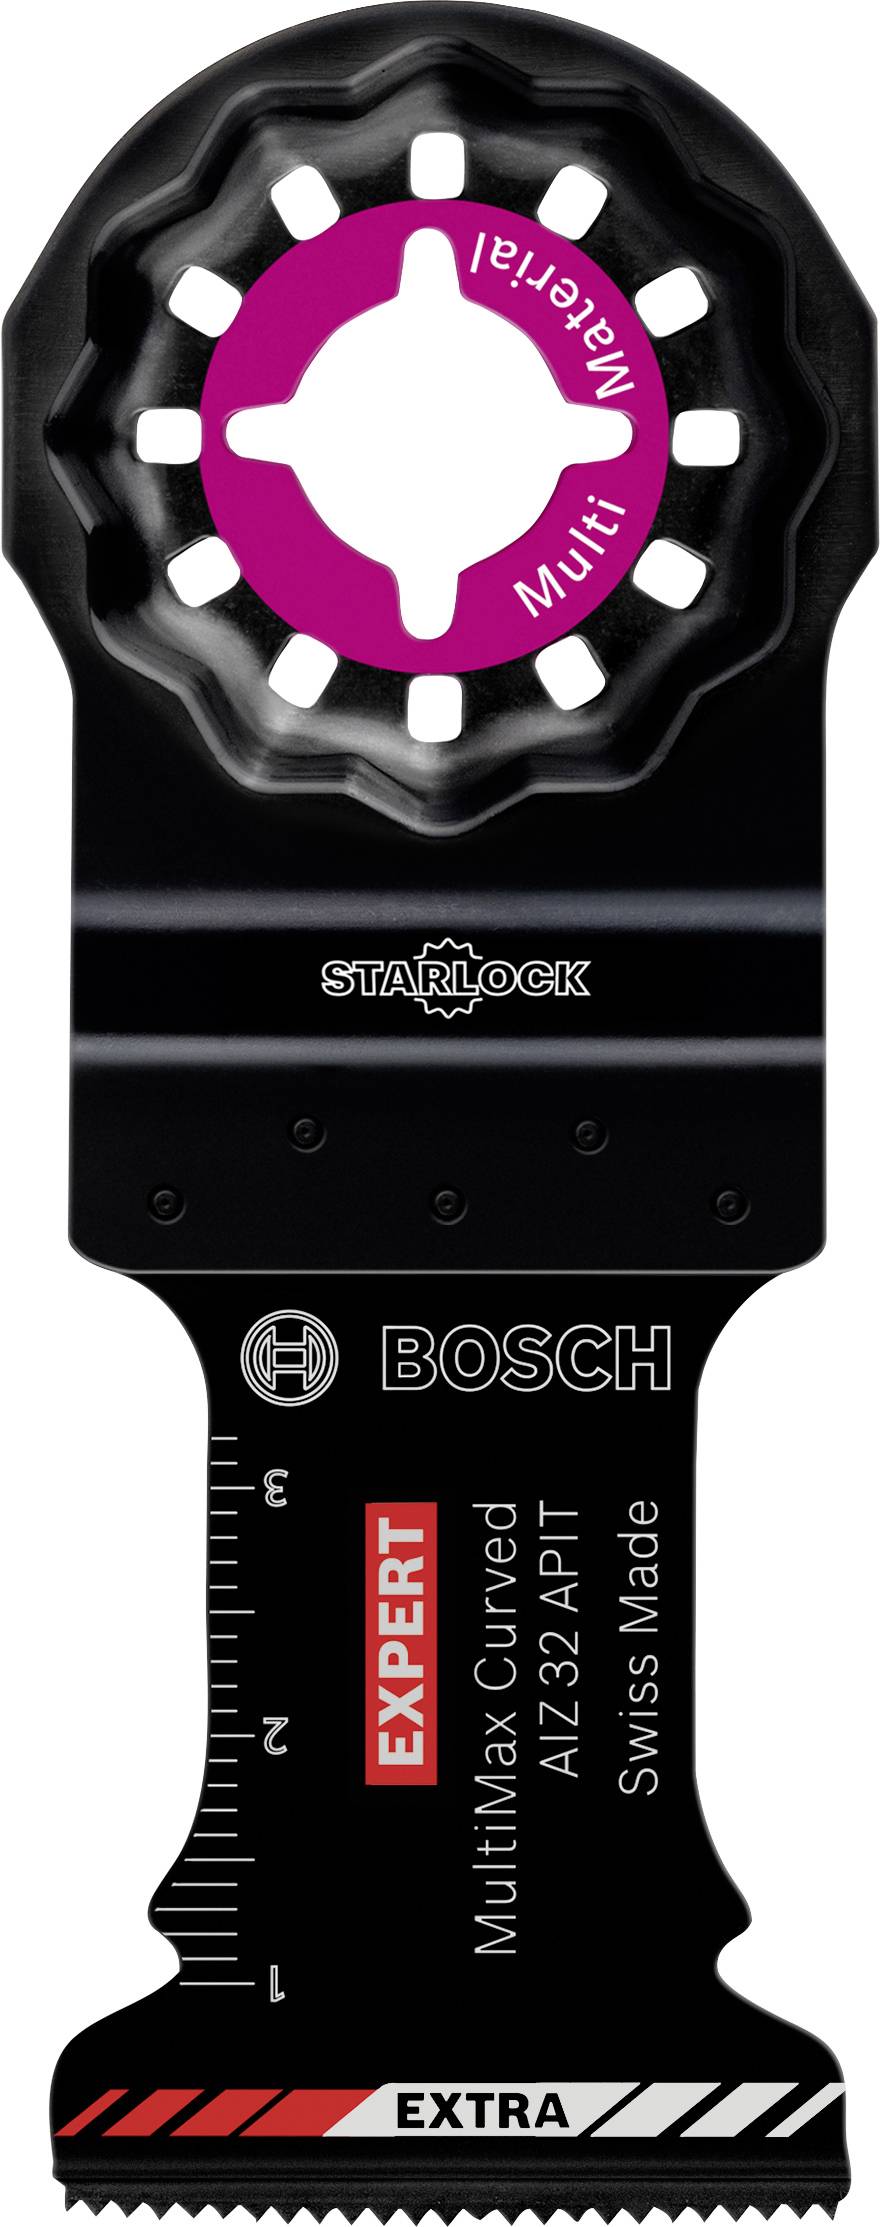 BOSCH EXPERT Starlock Carbide 2608900025 Extra Tauchsägeblatt MultiMaterial